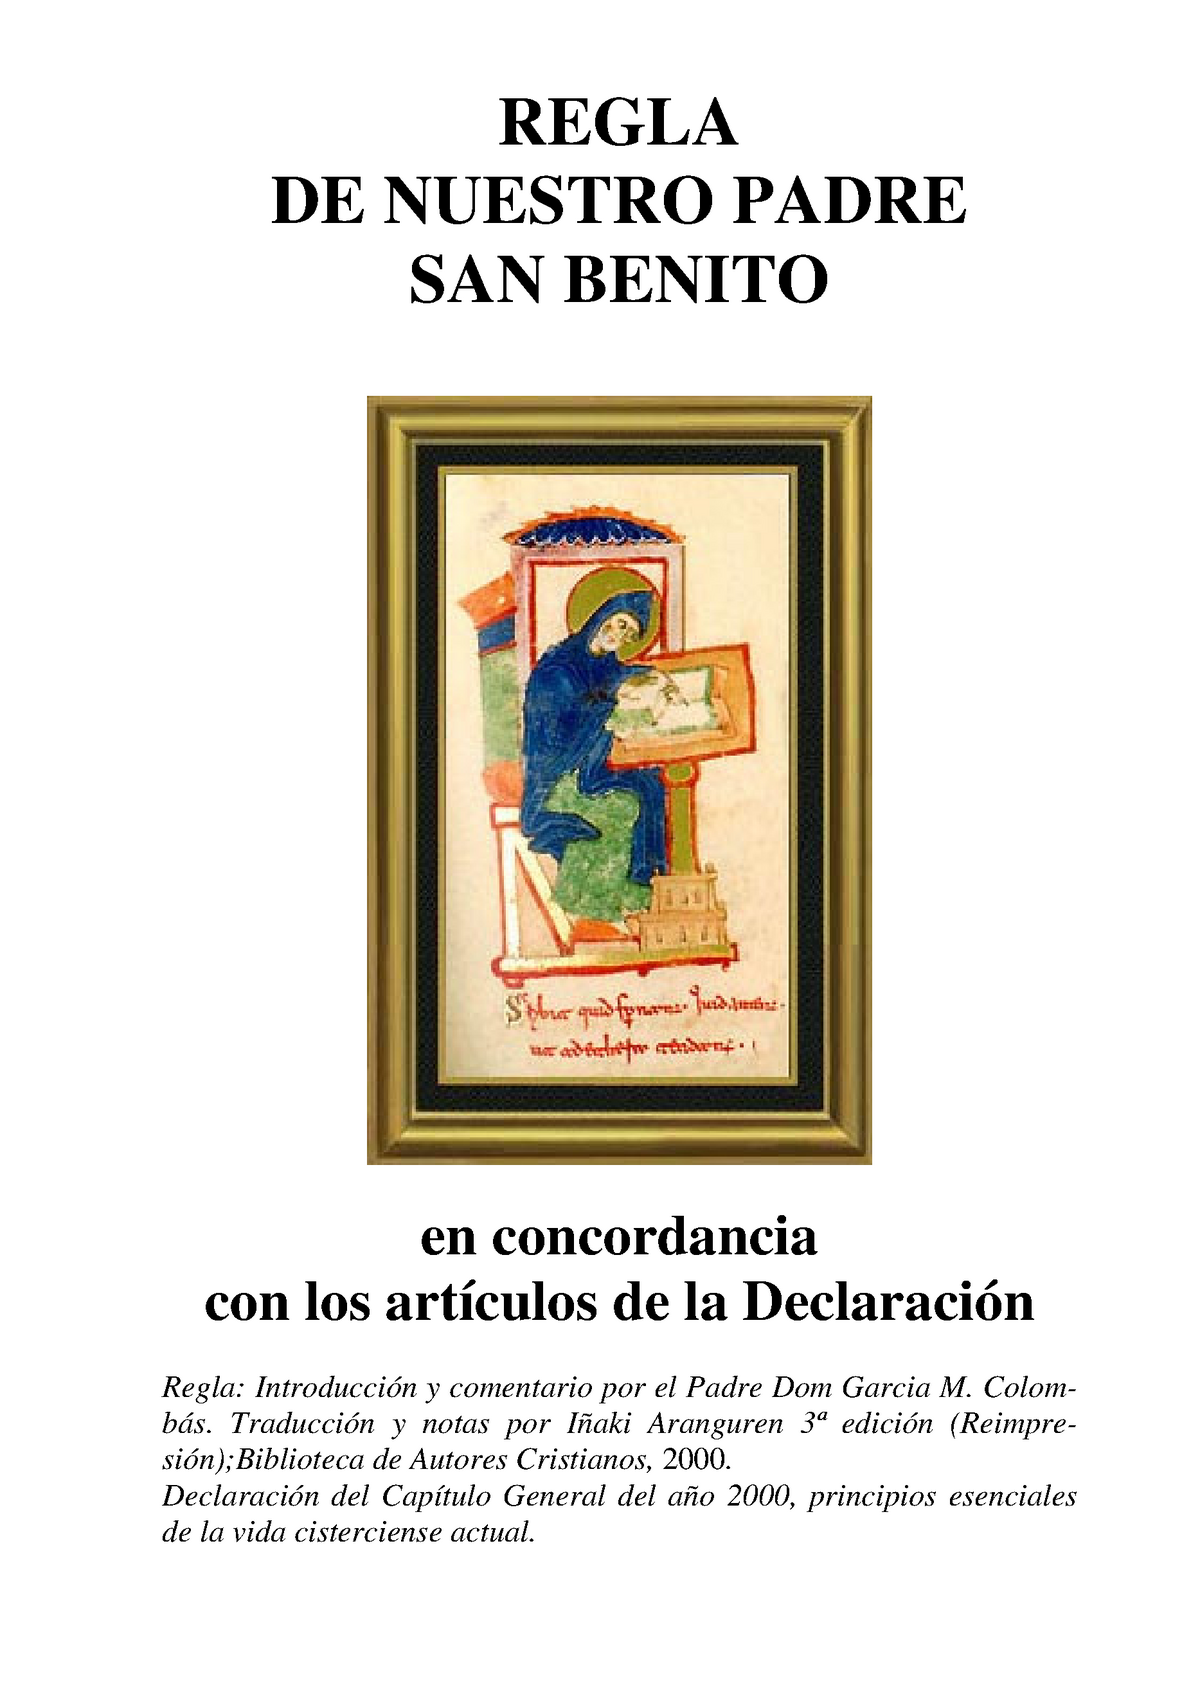 Regla San-Benito - REGLA DE NUESTRO PADRE SAN BENITO en concordancia con  los artículos de la - Studocu